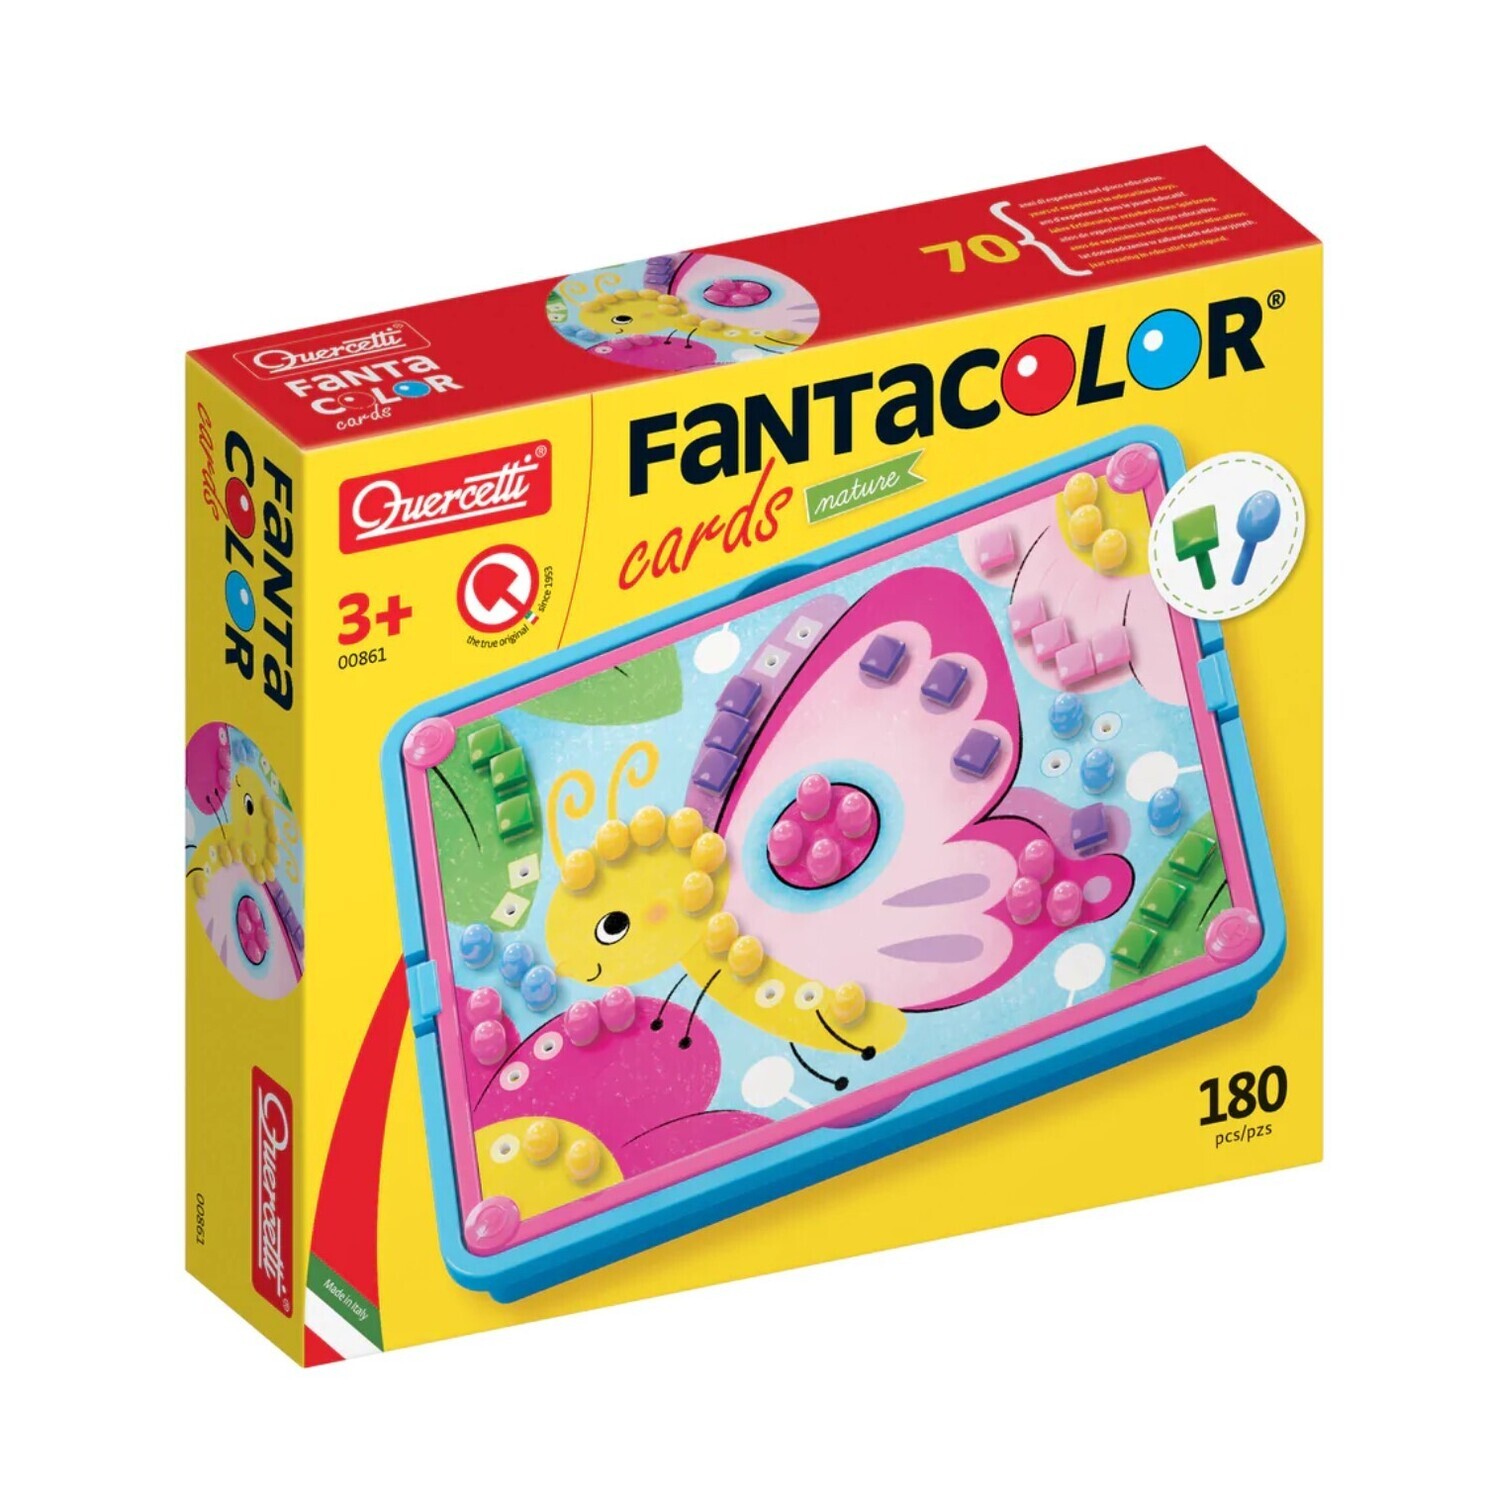 Fantacolor Cards